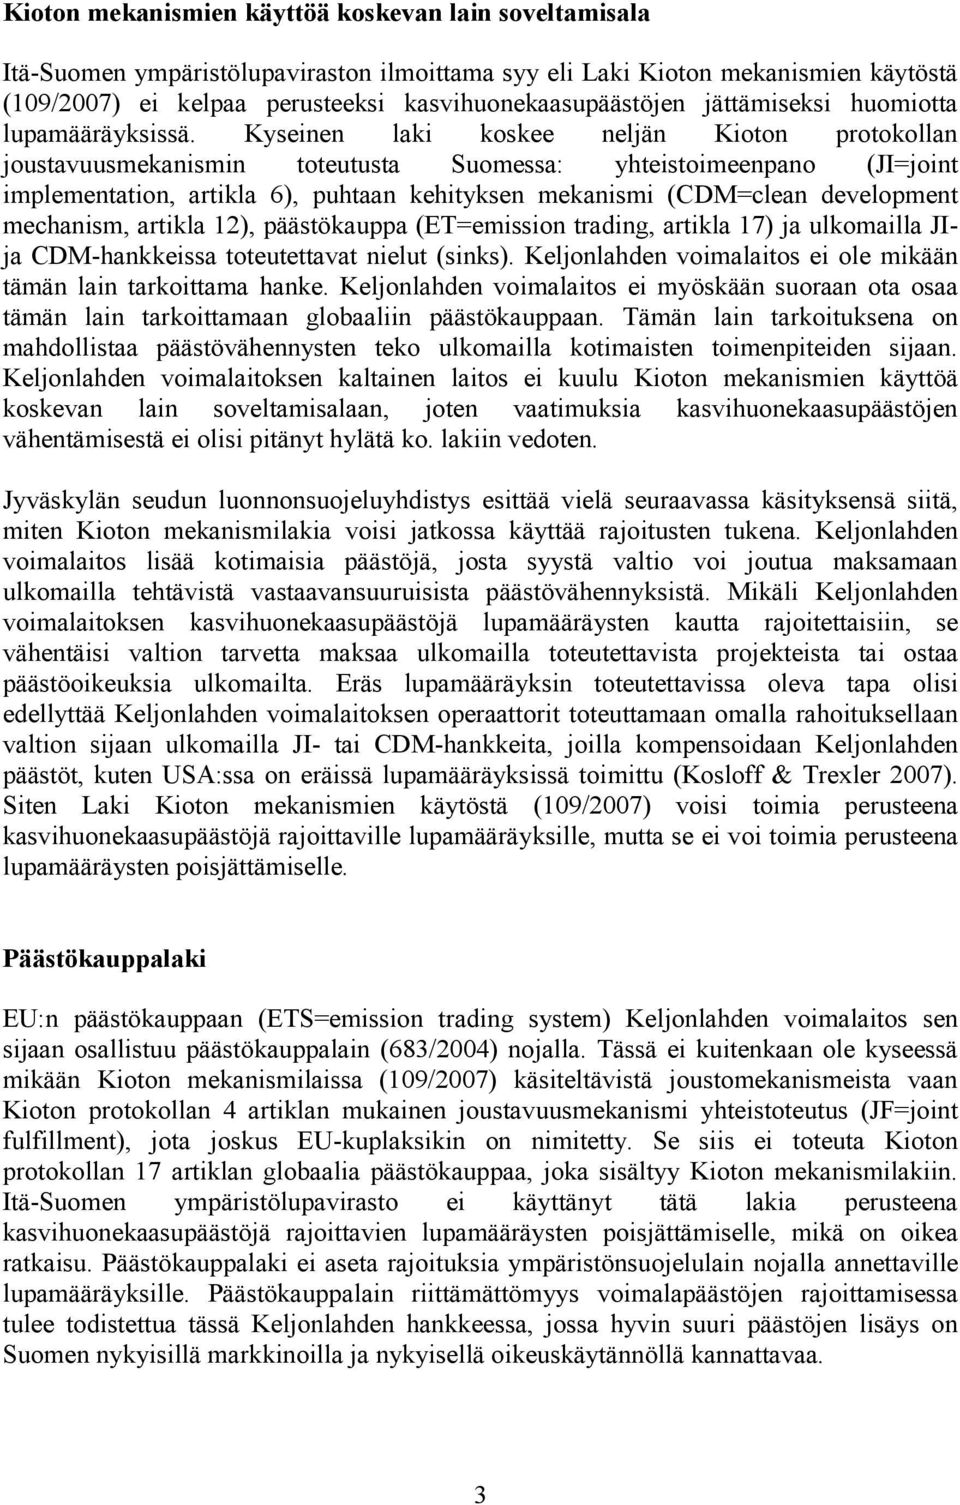 Kyseinen laki koskee neljän Kioton protokollan joustavuusmekanismin toteutusta Suomessa: yhteistoimeenpano (JI=joint implementation, artikla 6), puhtaan kehityksen mekanismi (CDM=clean development